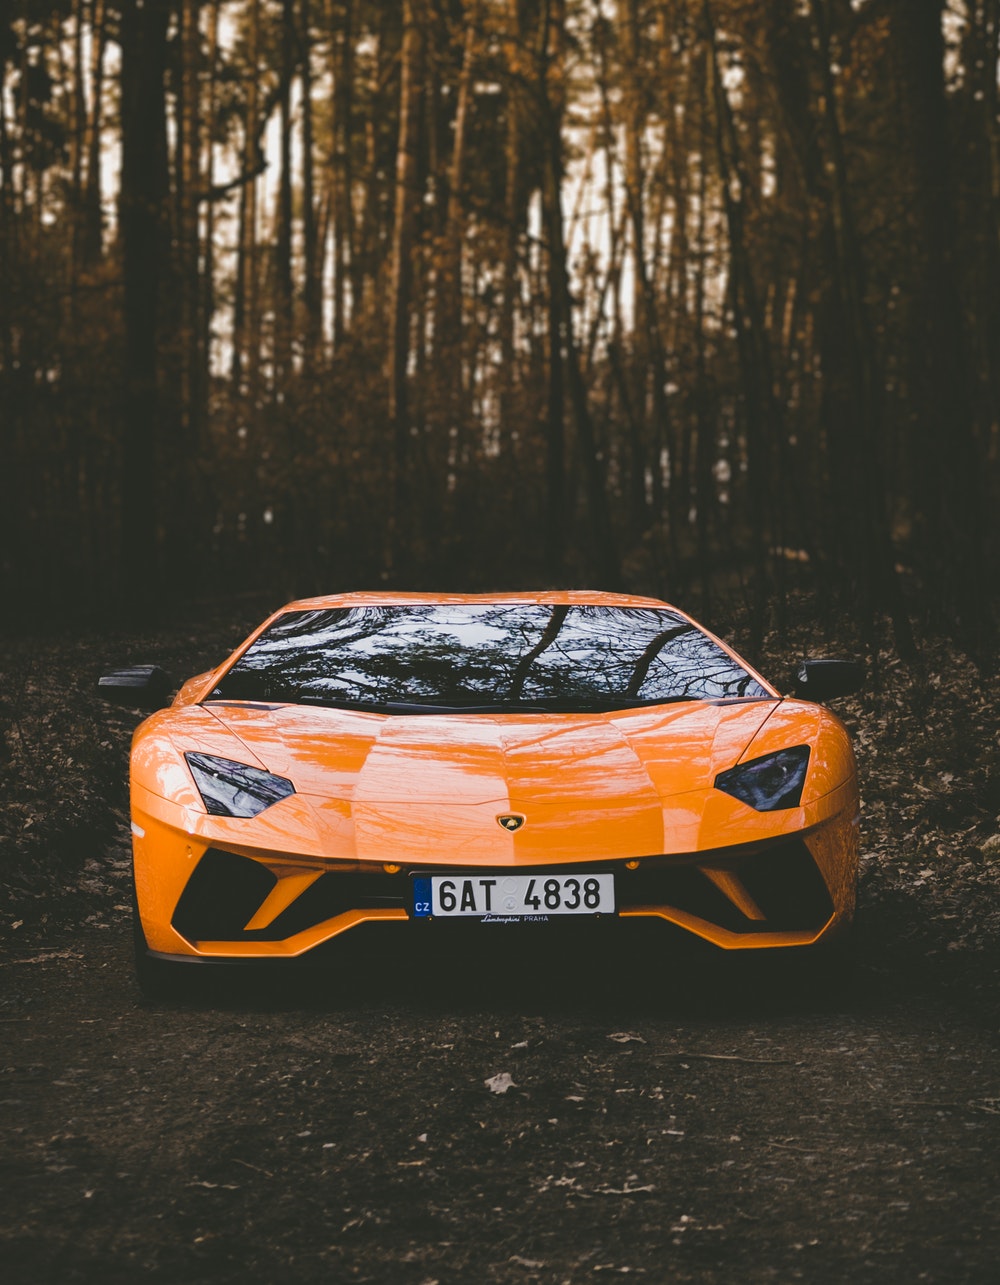 Lamborghini Wallpaper Hd Free Download